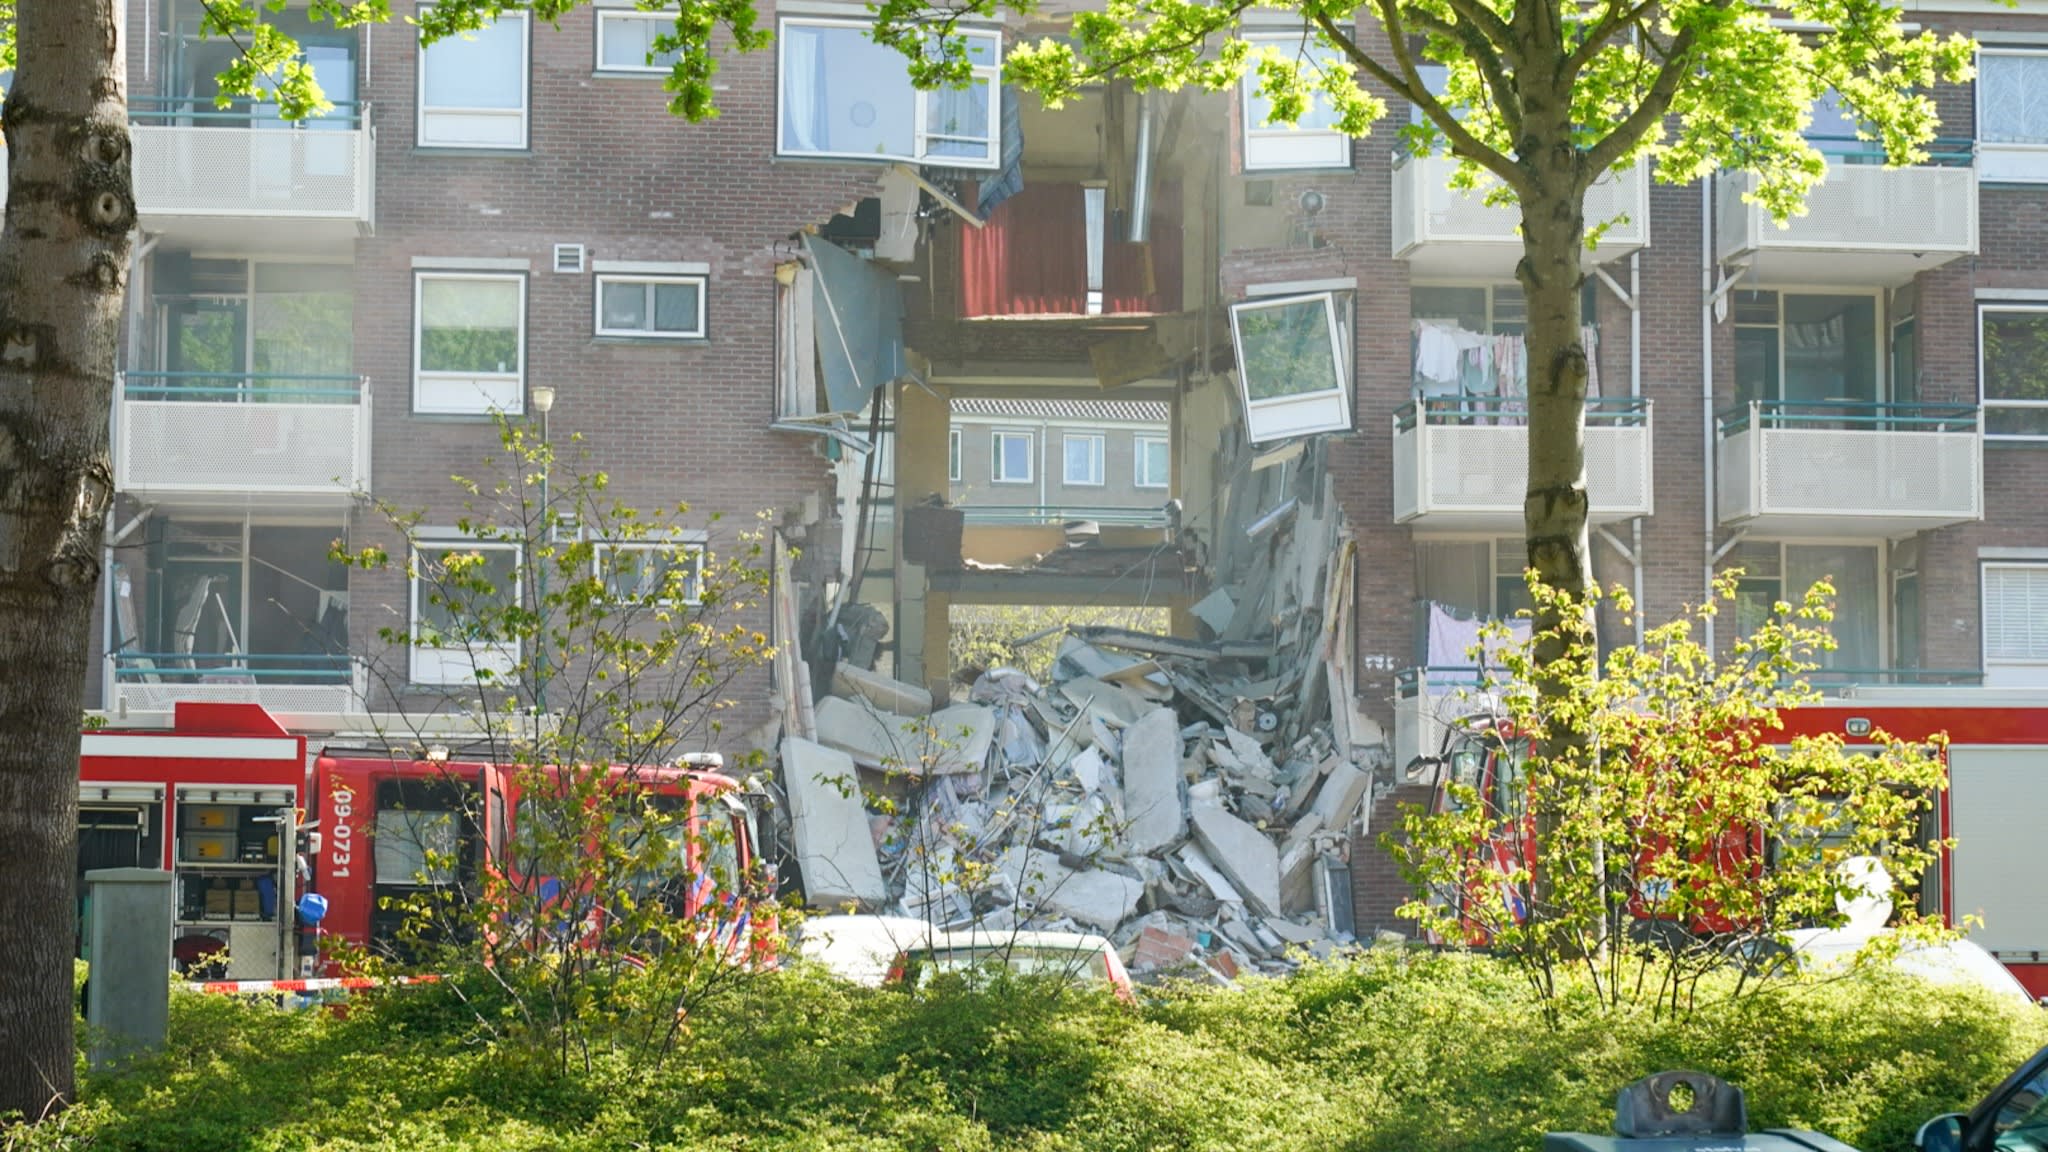 Deel flat verwoest en hulpverleners gewond bij explosie na gaslek in Bilthoven